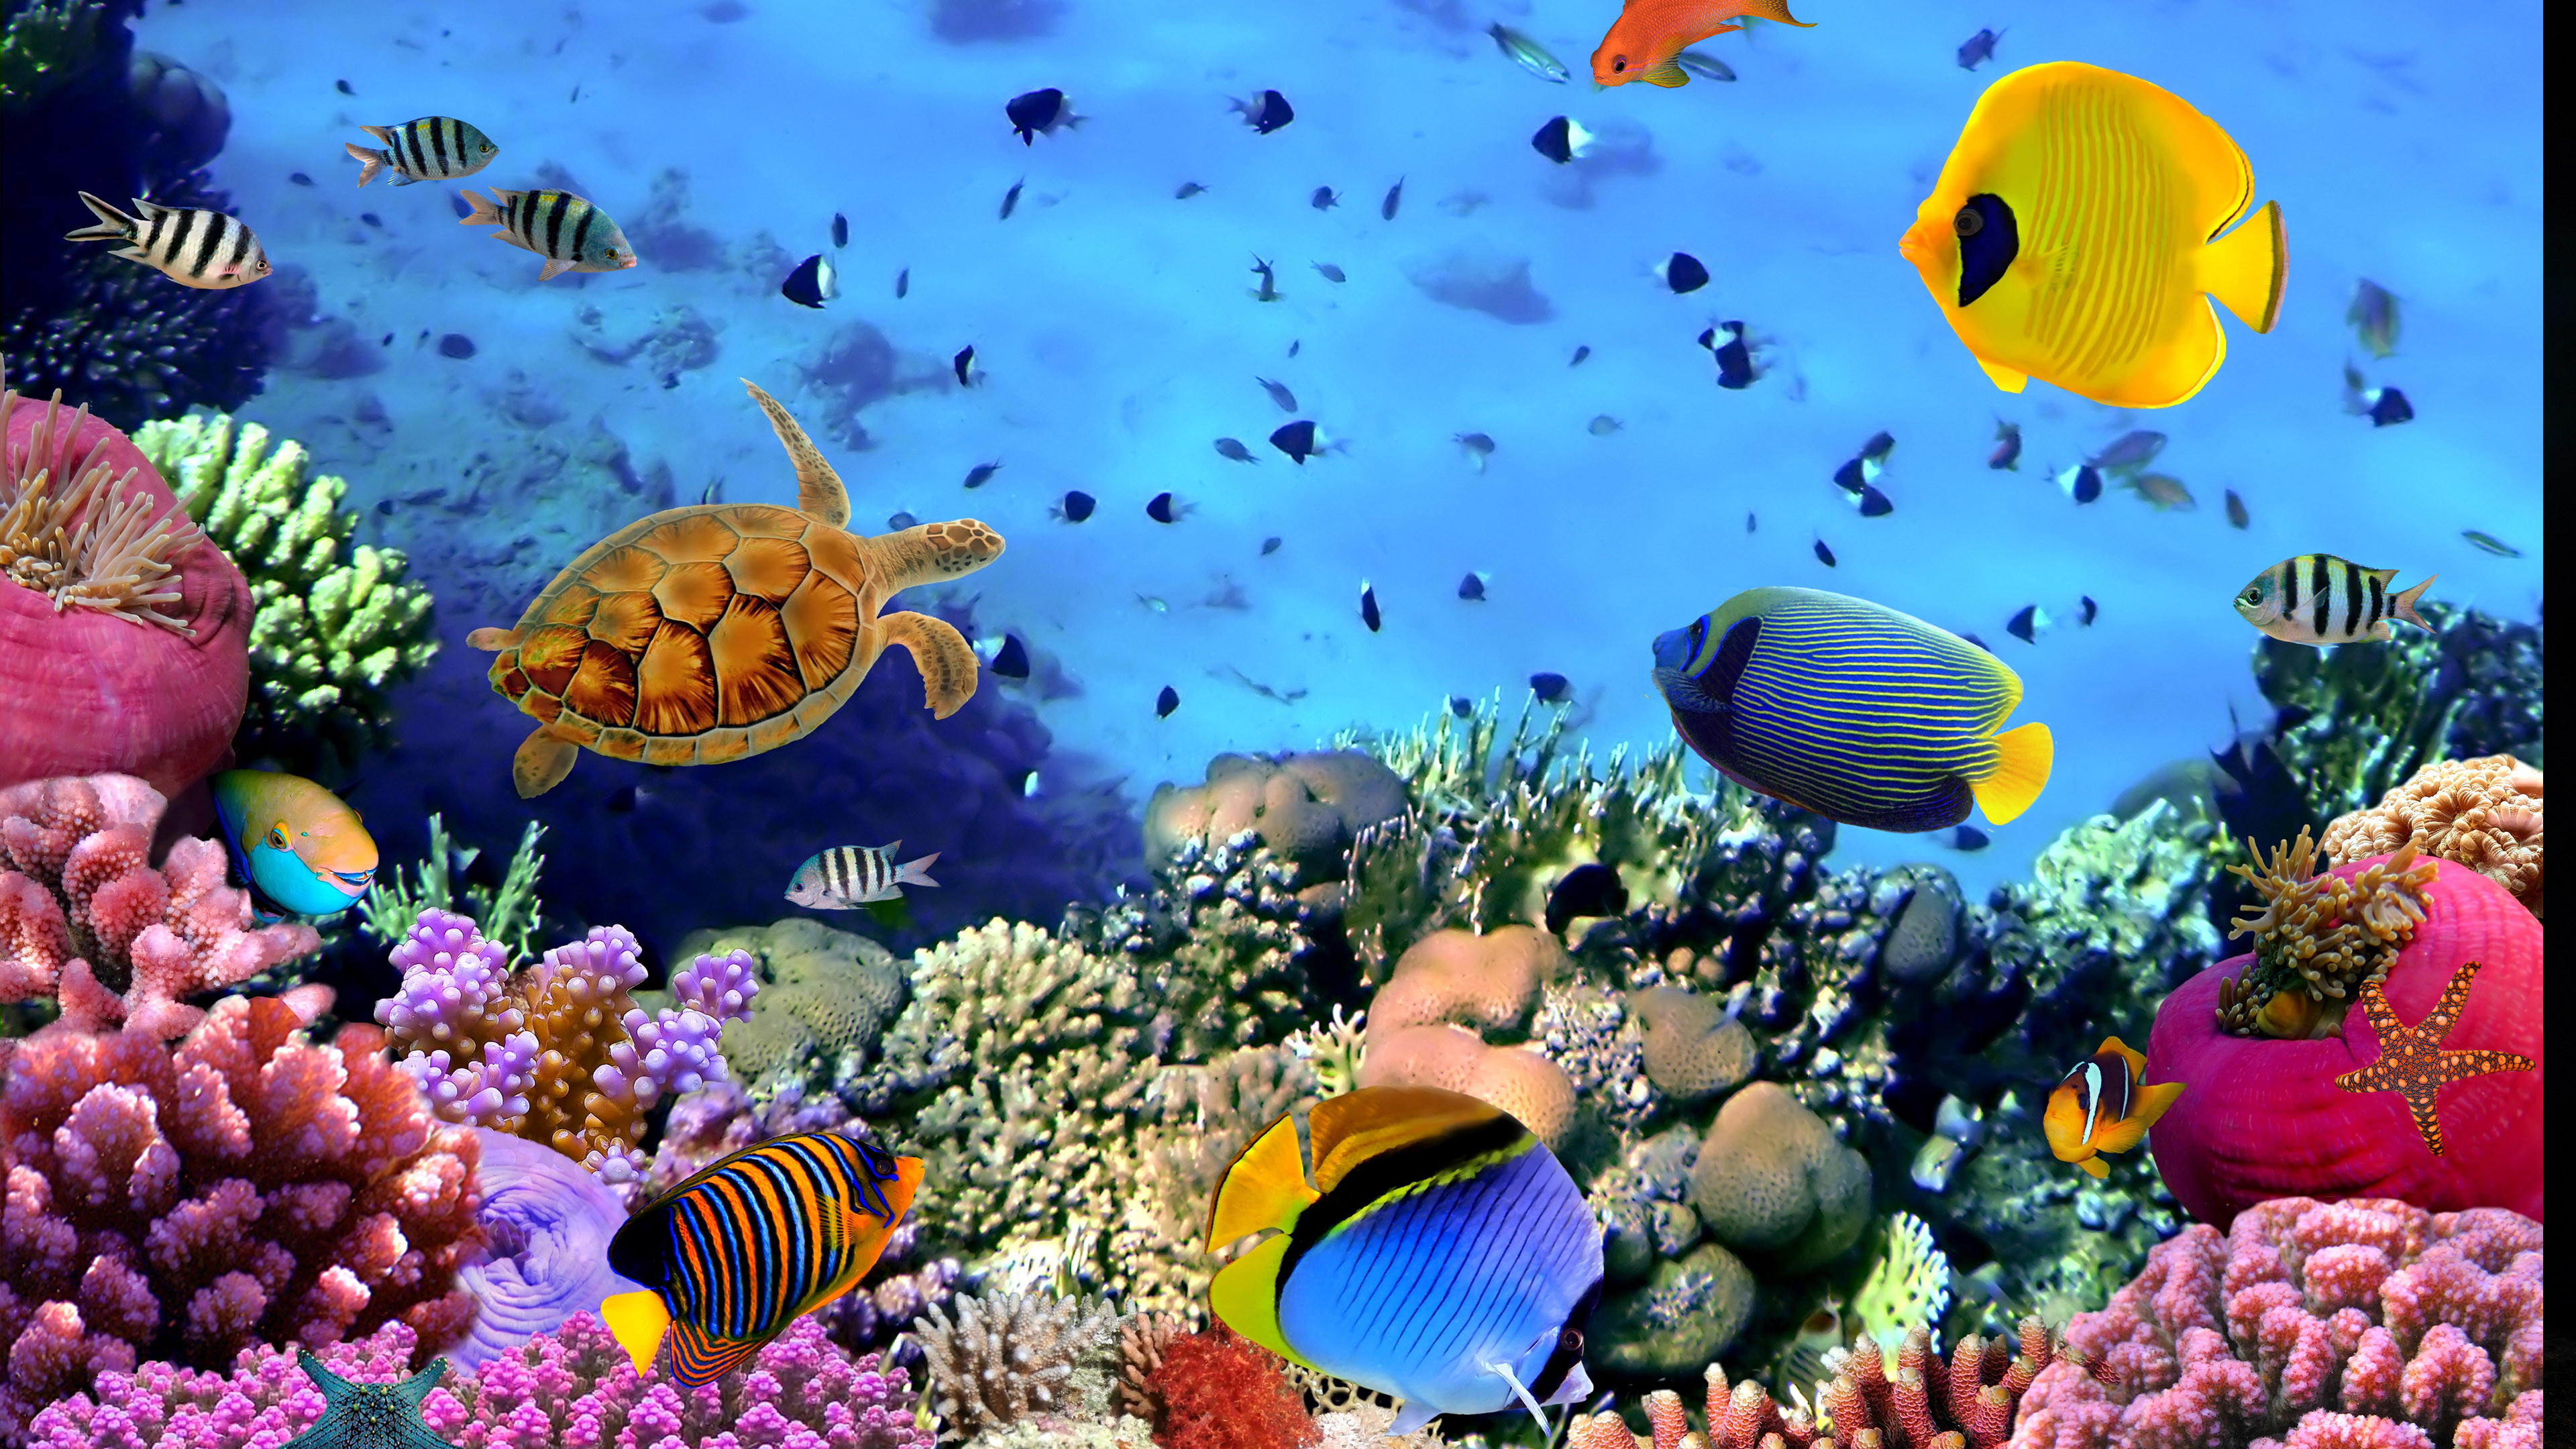 3840x2160 1920x1080 Desktop Aquarium 3D Live Wallpaper on Imac